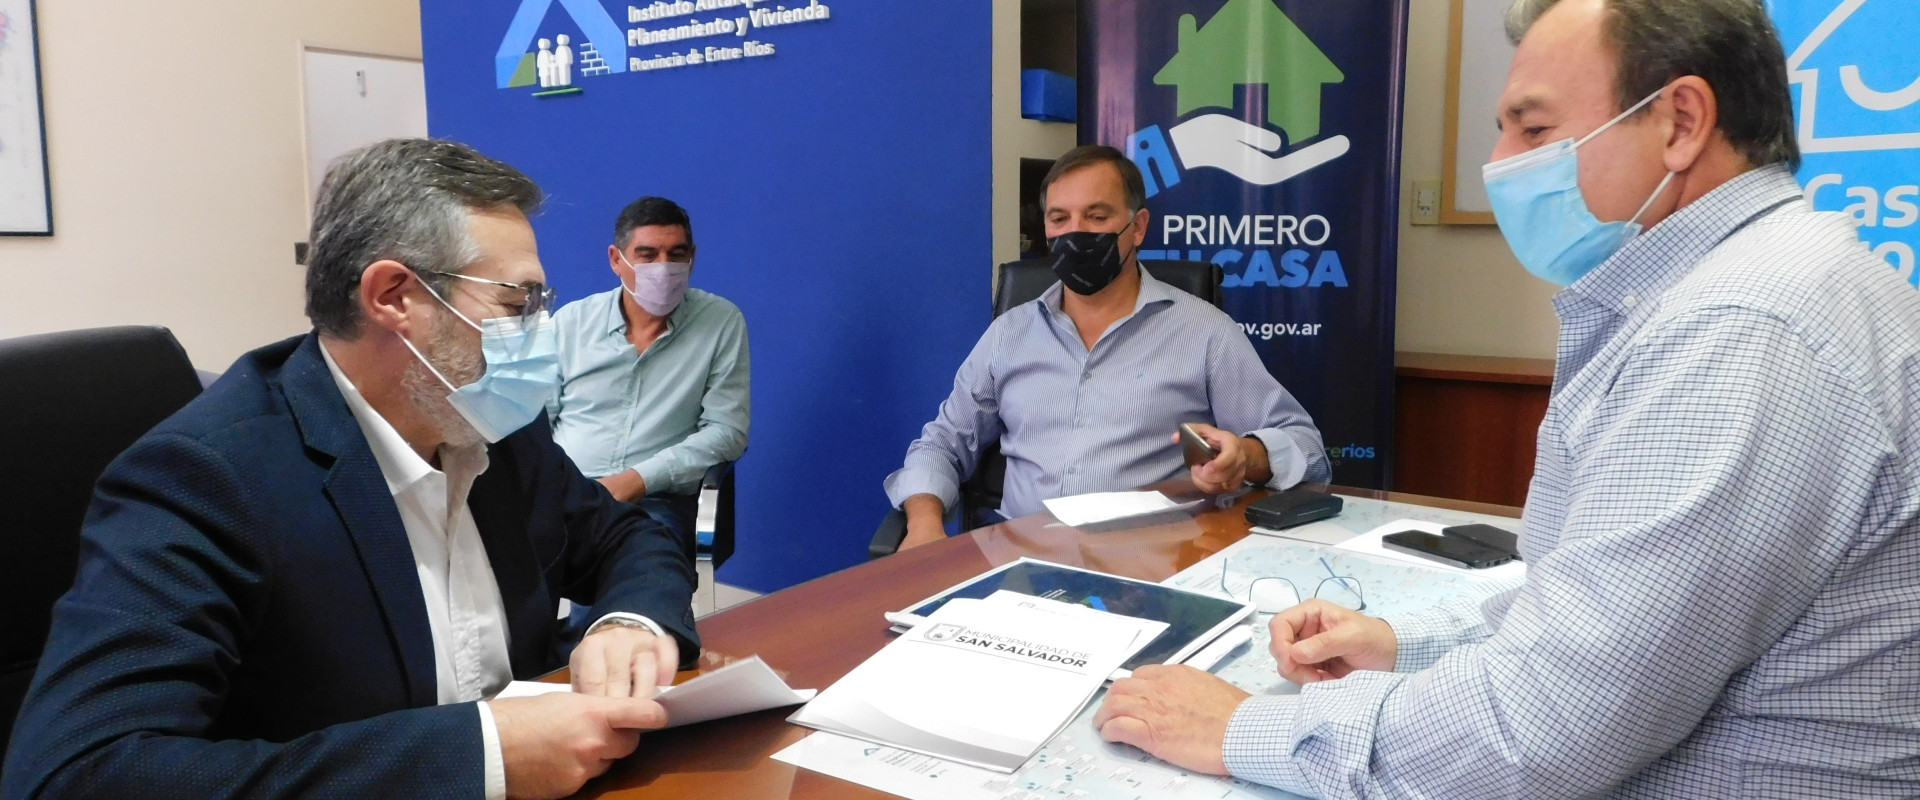 Nuevas gestiones para la construcción de viviendas en San Salvador